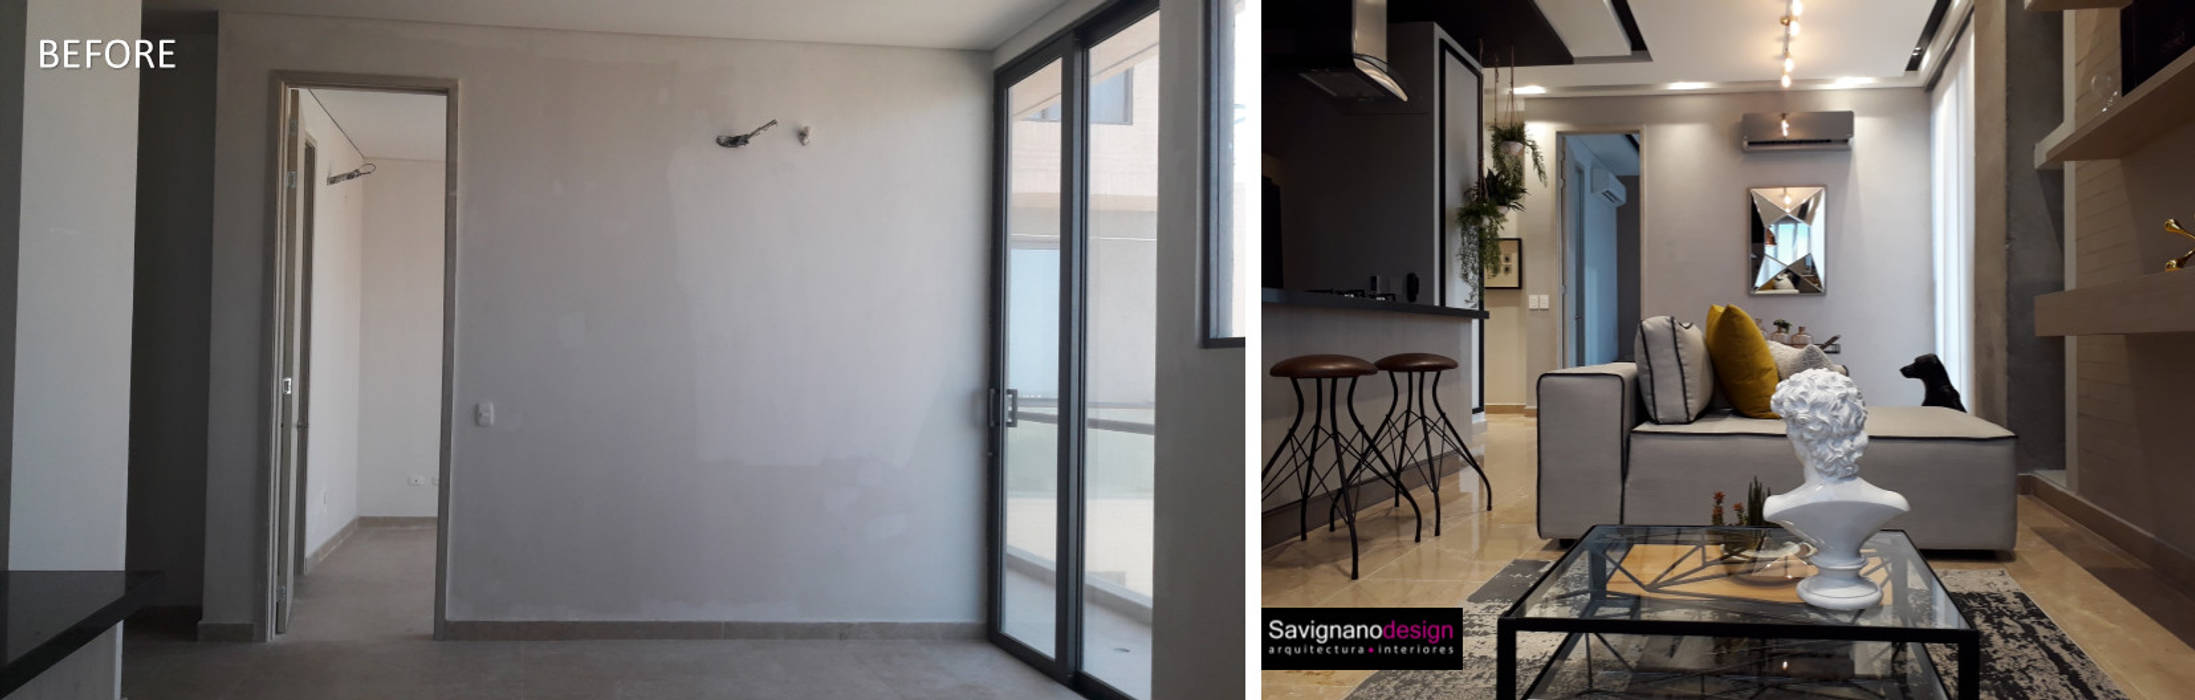 Proyecto Apartamento de soltero - Antes y Despues, Savignano Design Savignano Design